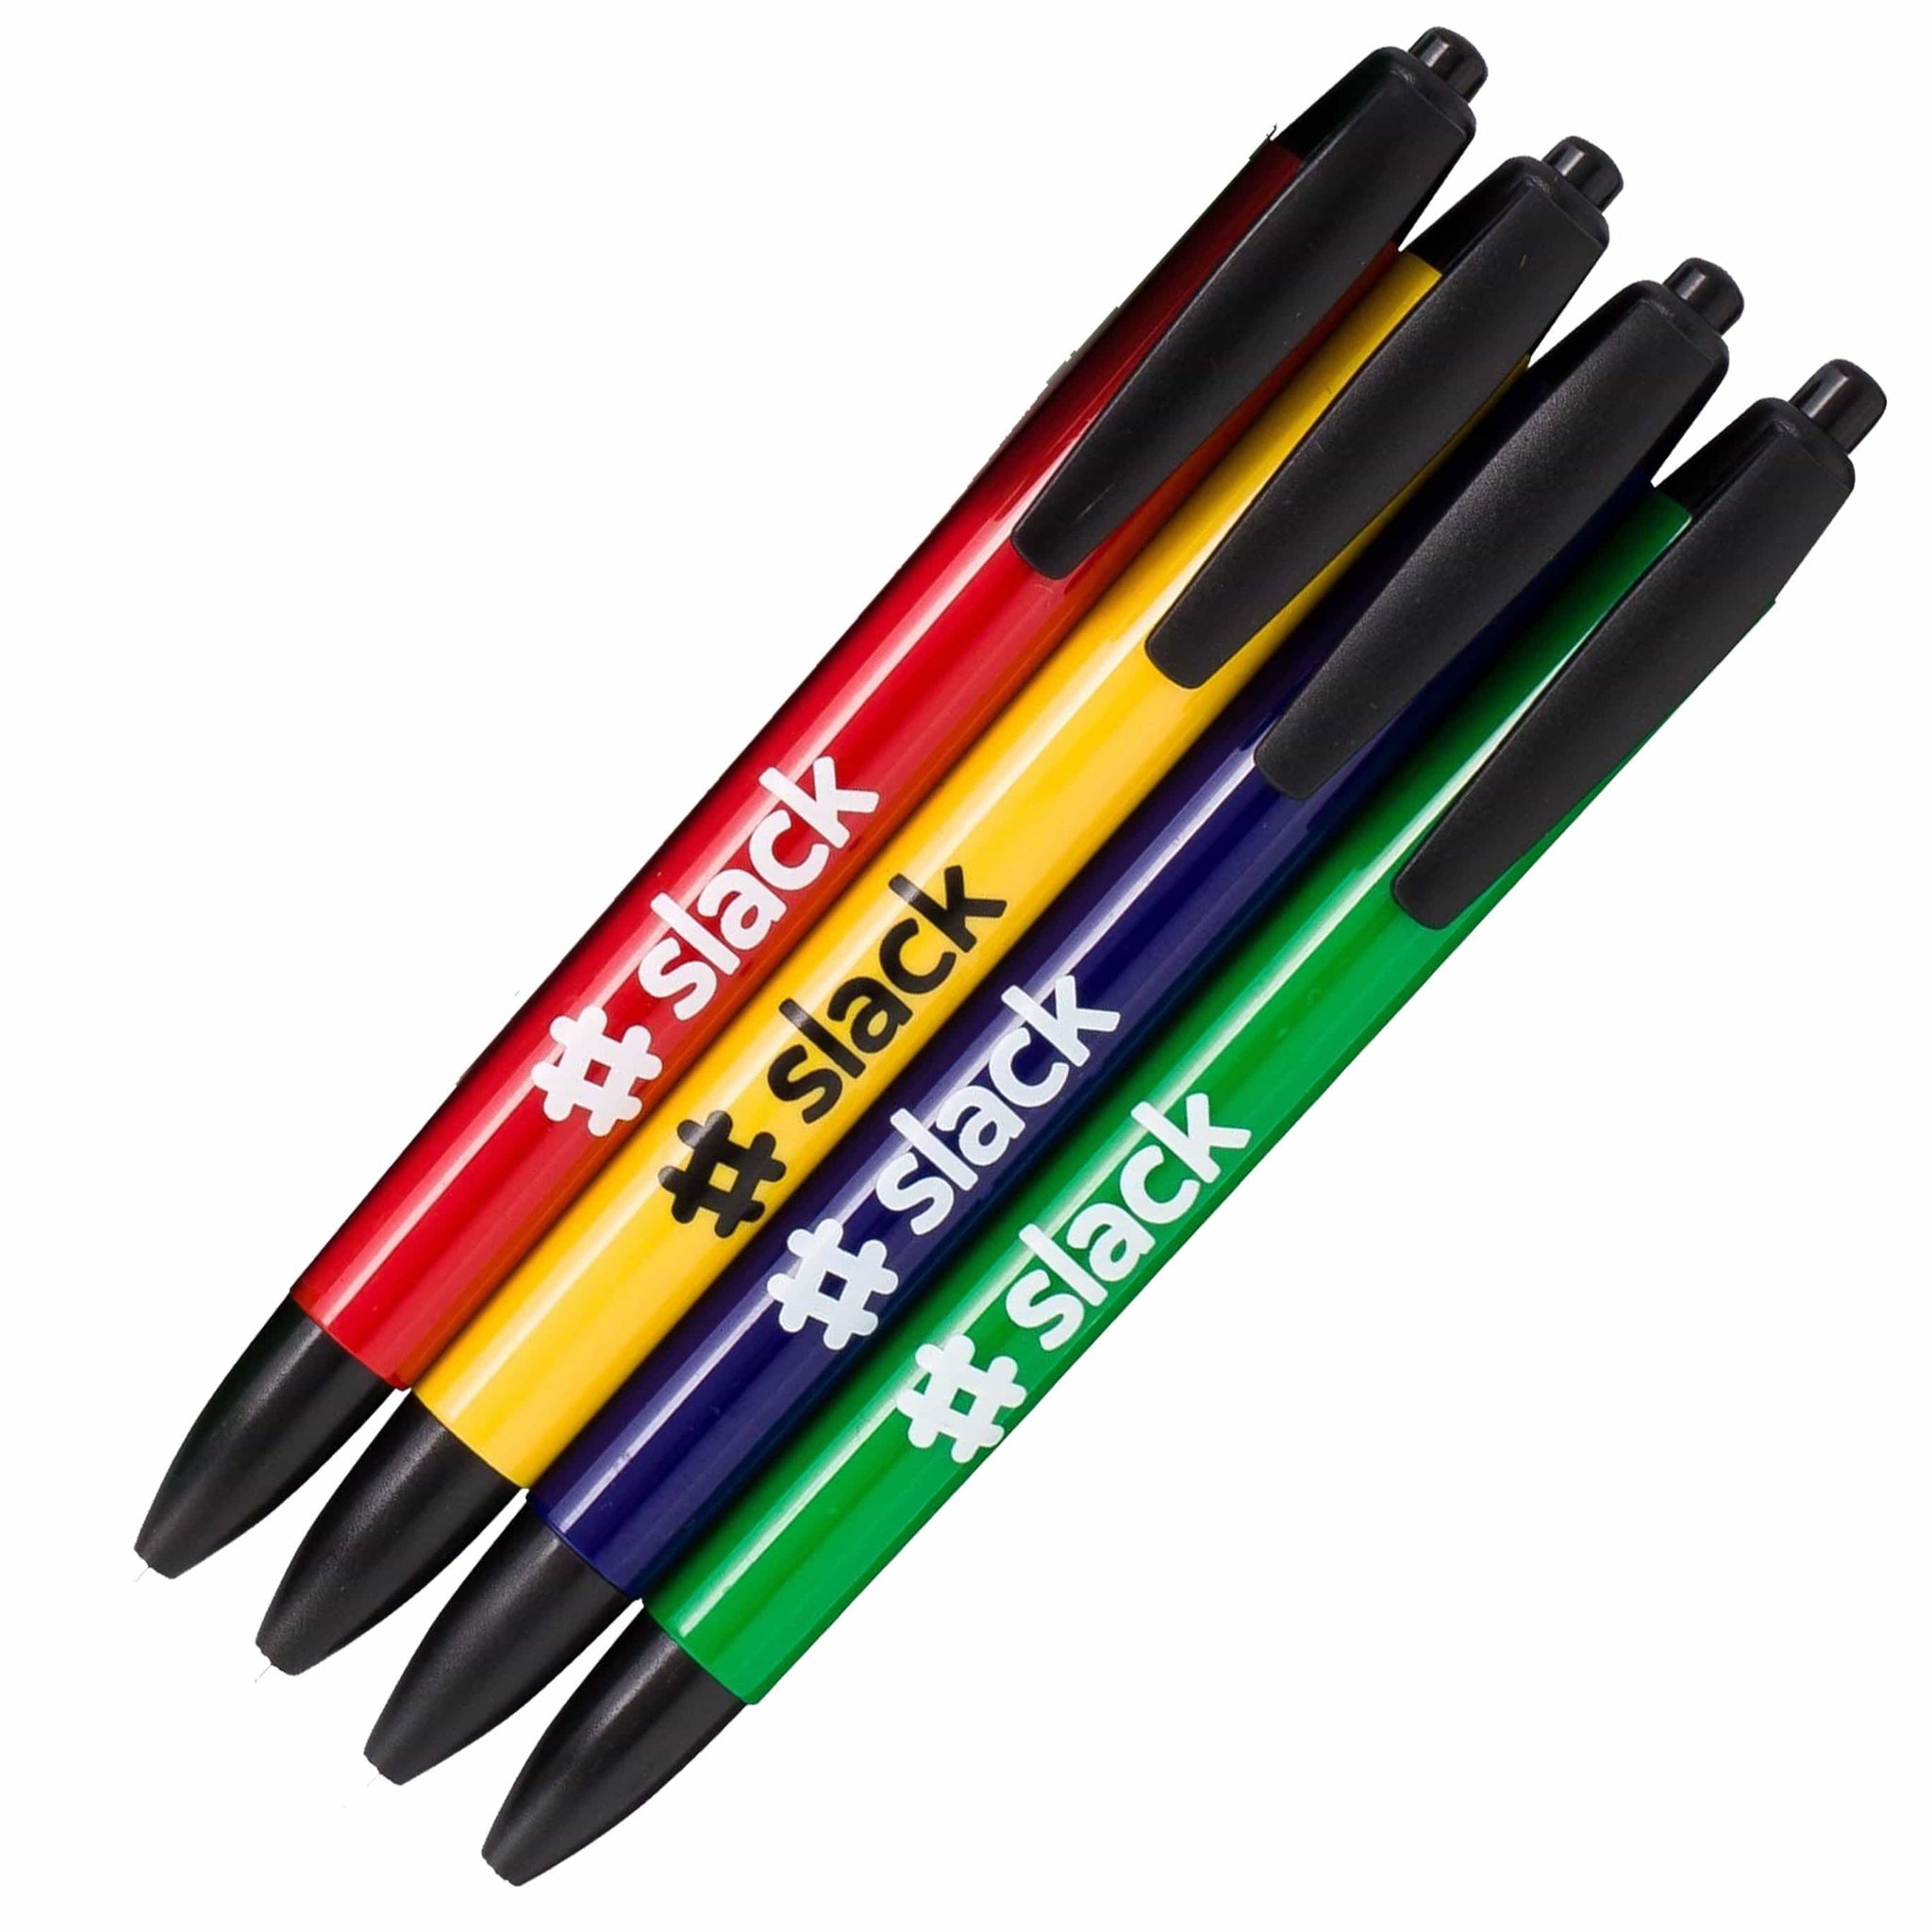 Xpress Confetti, Customized Multicolor Pens